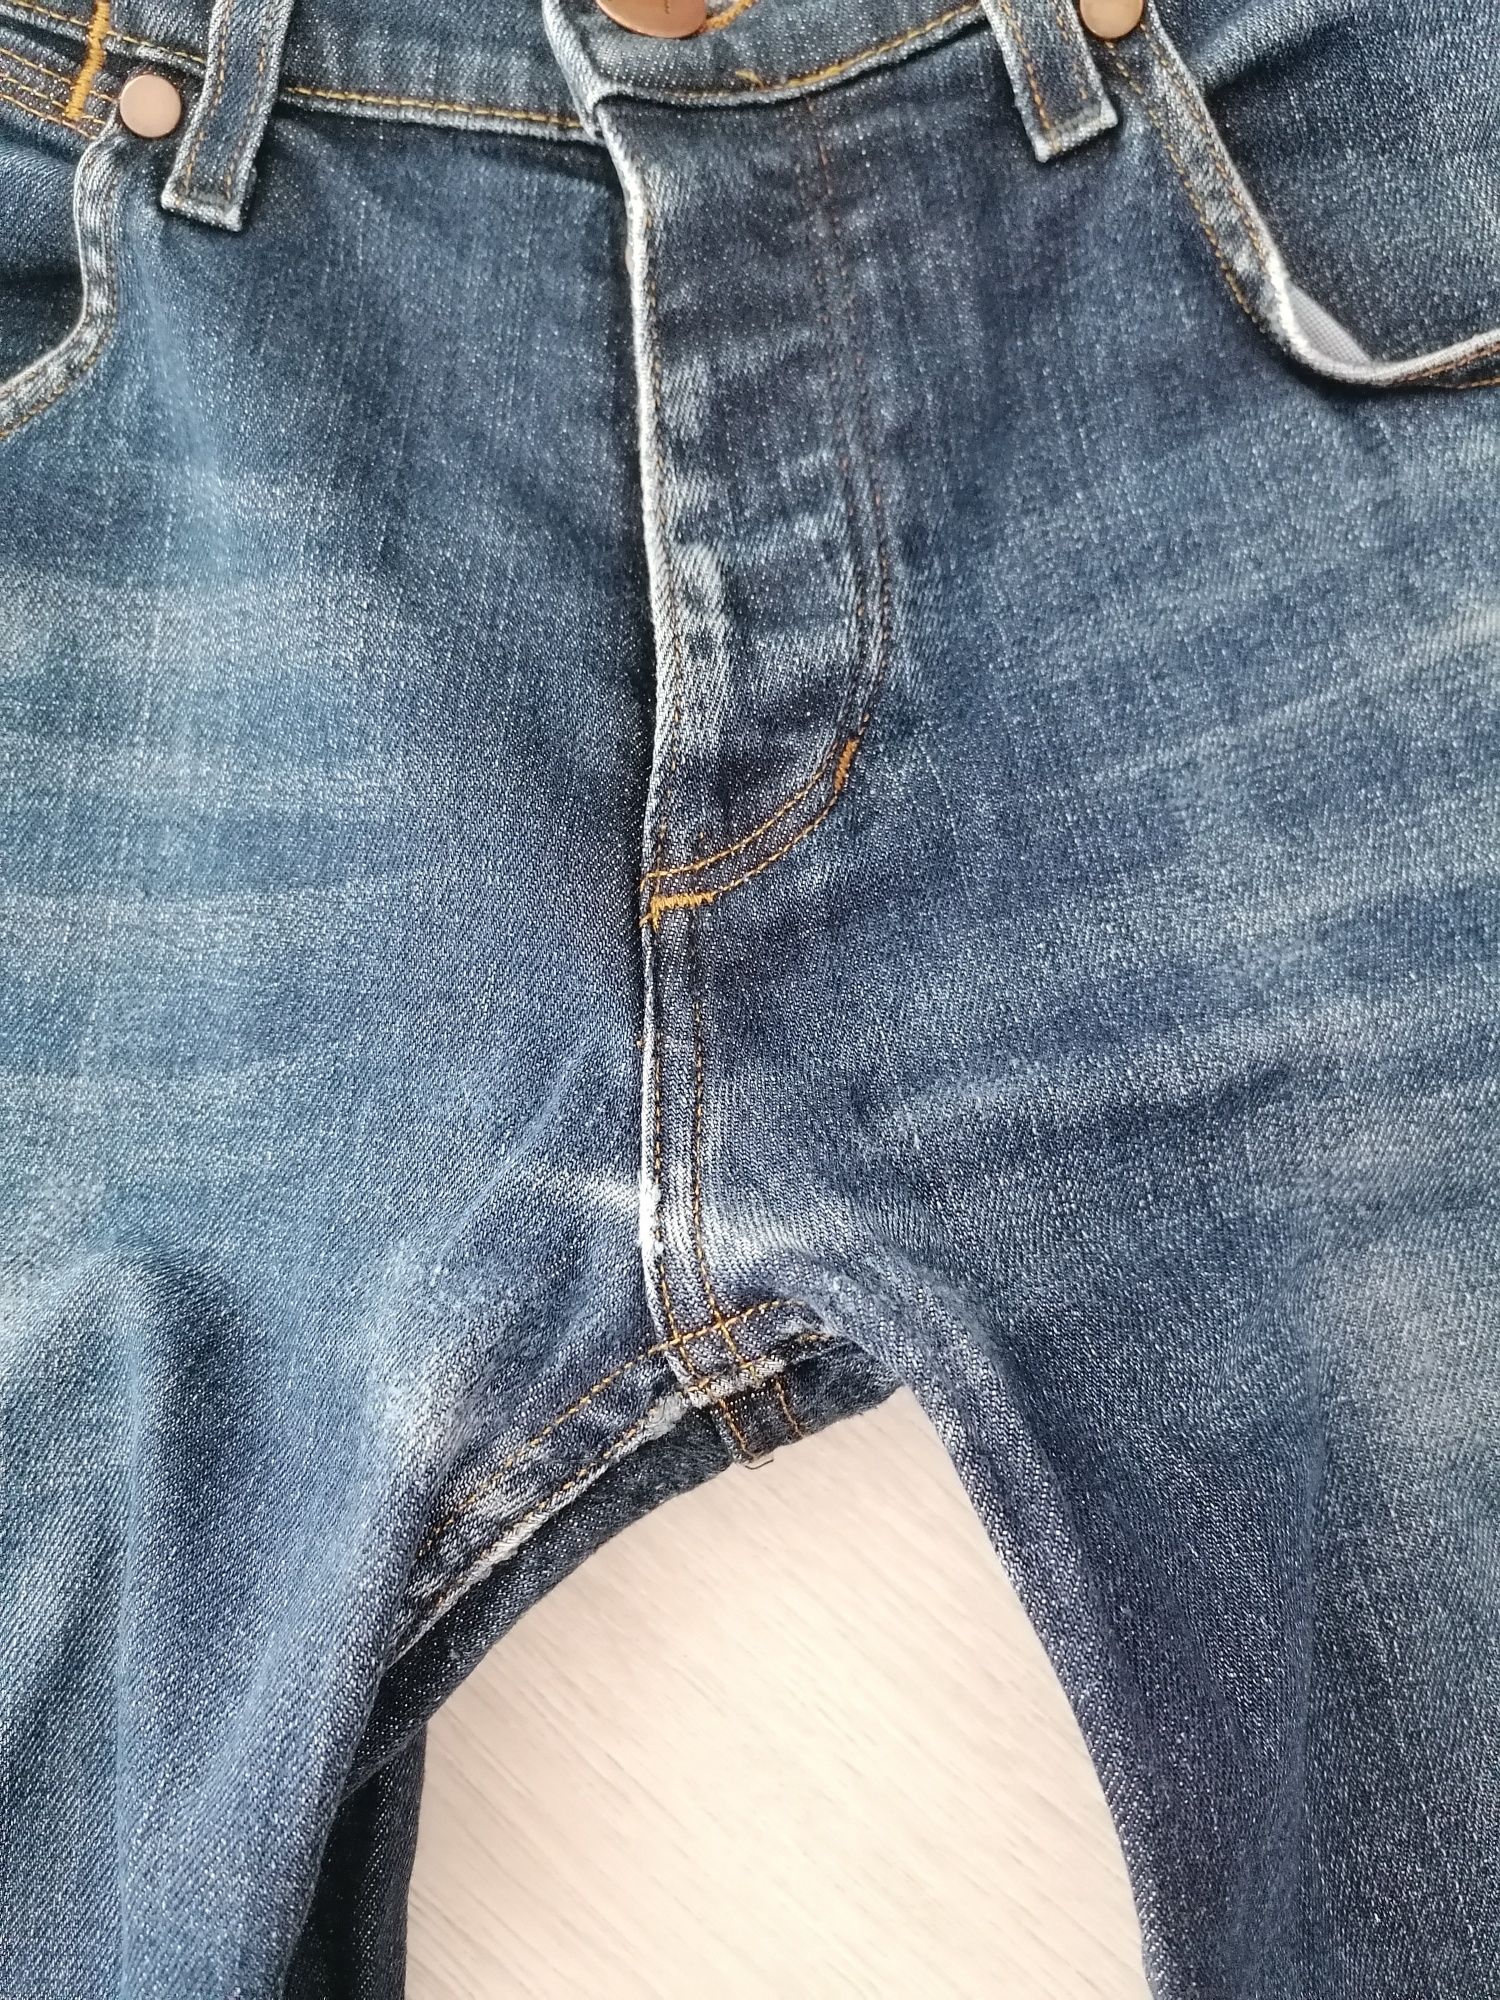 Spodnie jeansy Wrangler męskie